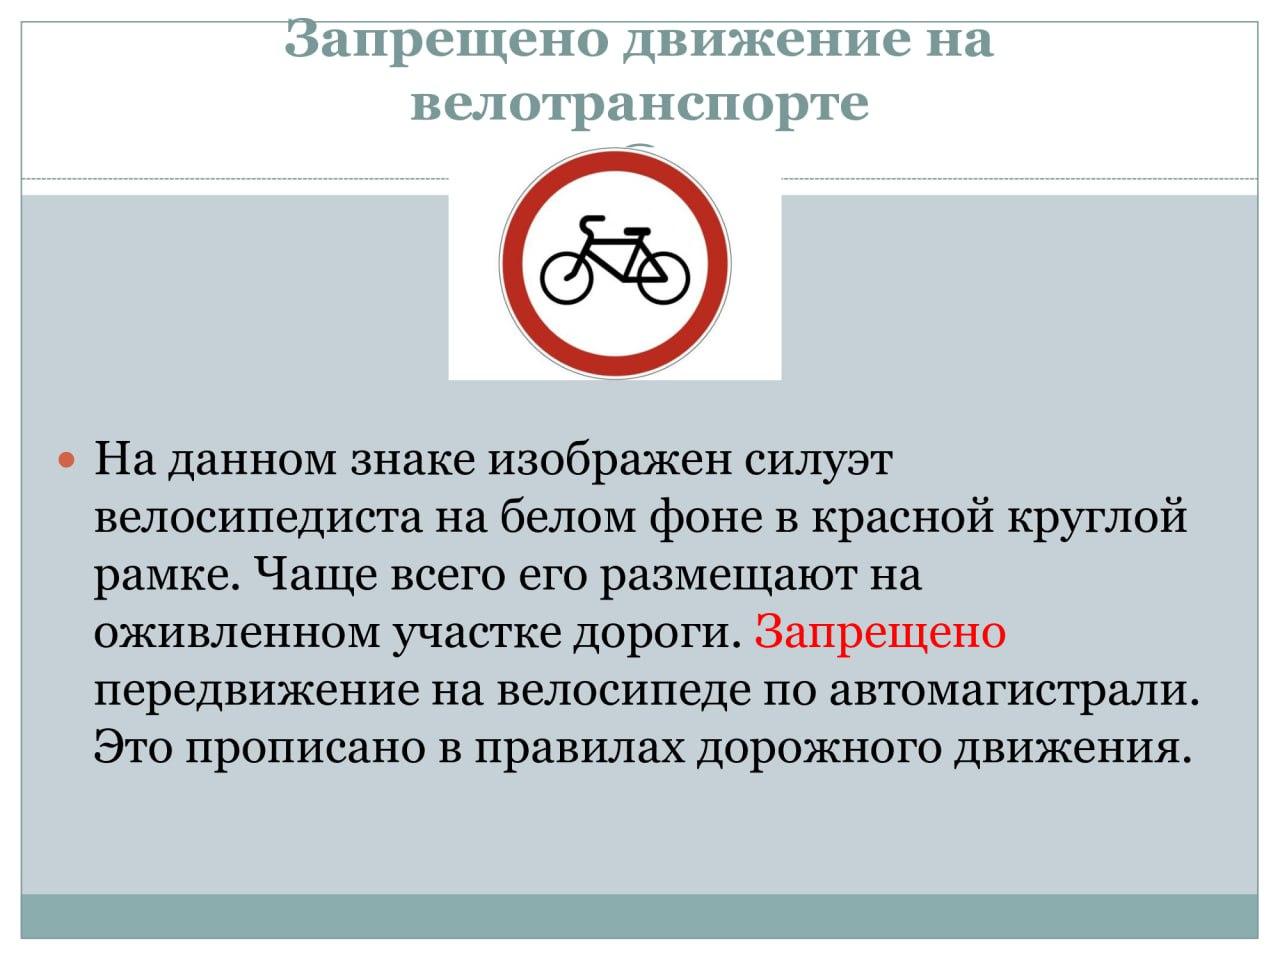 Запрет действий по регистрации что это значит. Запрещено движение на велотранспорте. Данный знак запрещает движение. Знак запрет на велотранспорт. Знак движение на велосипедах запрещено.